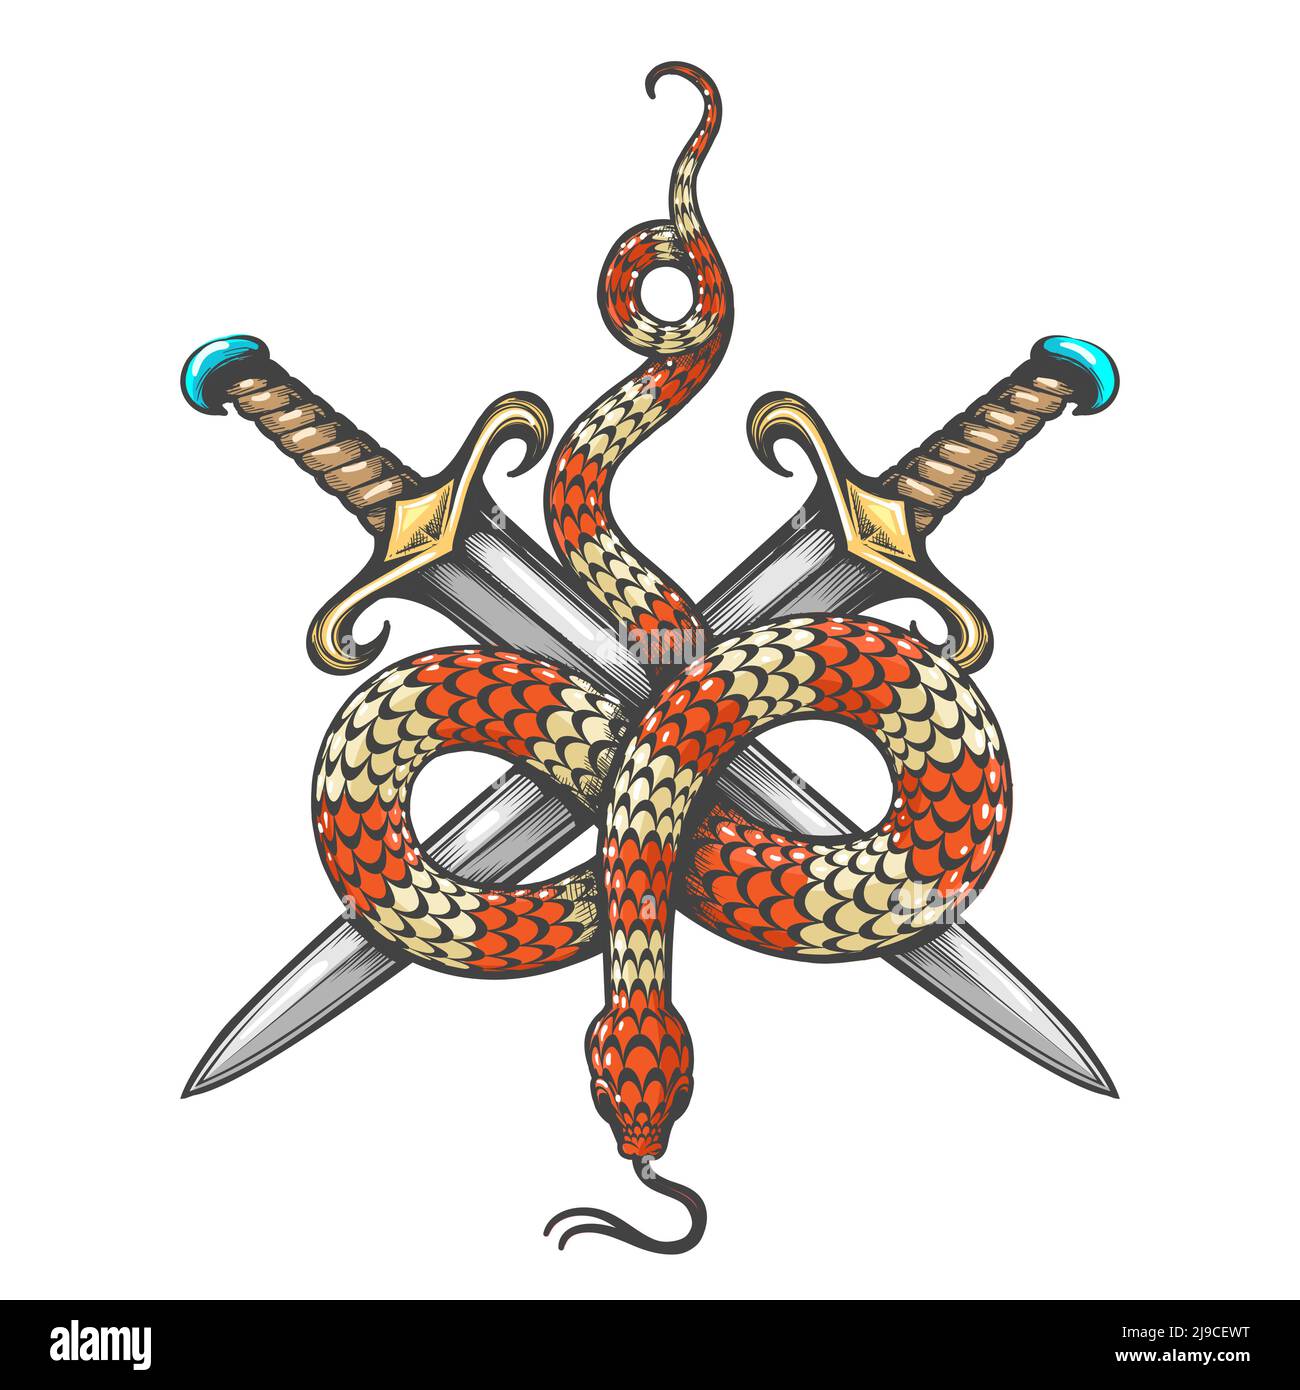 Tatuaggio di serpente e due spade disegnate in stile engraving isolate su sfondo bianco. Illustrazione vettoriale. Illustrazione Vettoriale